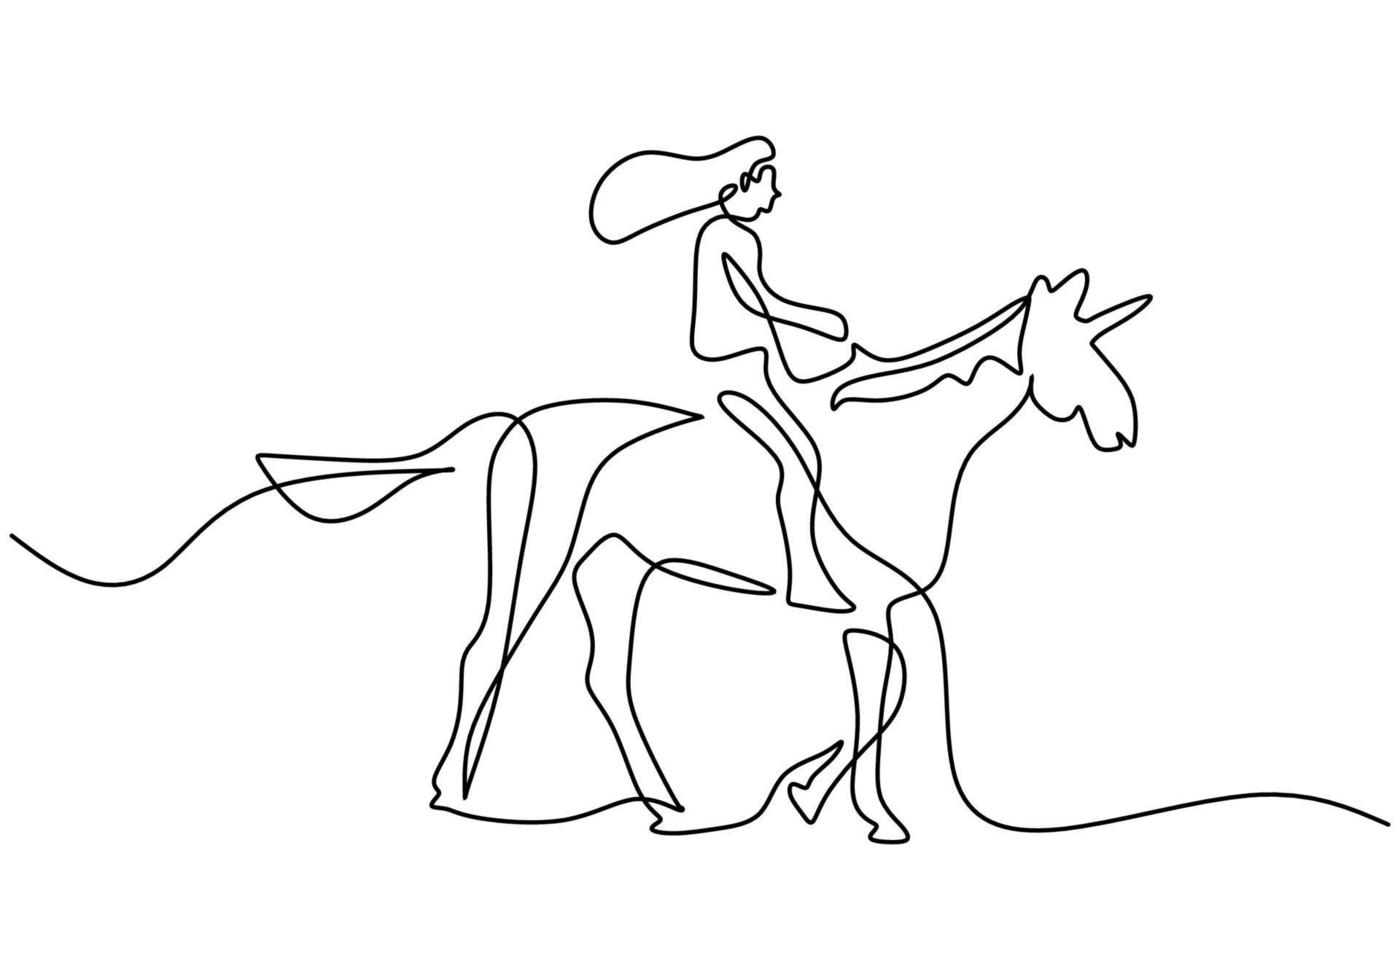 eine durchgehende einzelne Reihe von Frauen, die auf einem Pegasus-Pferd reiten vektor